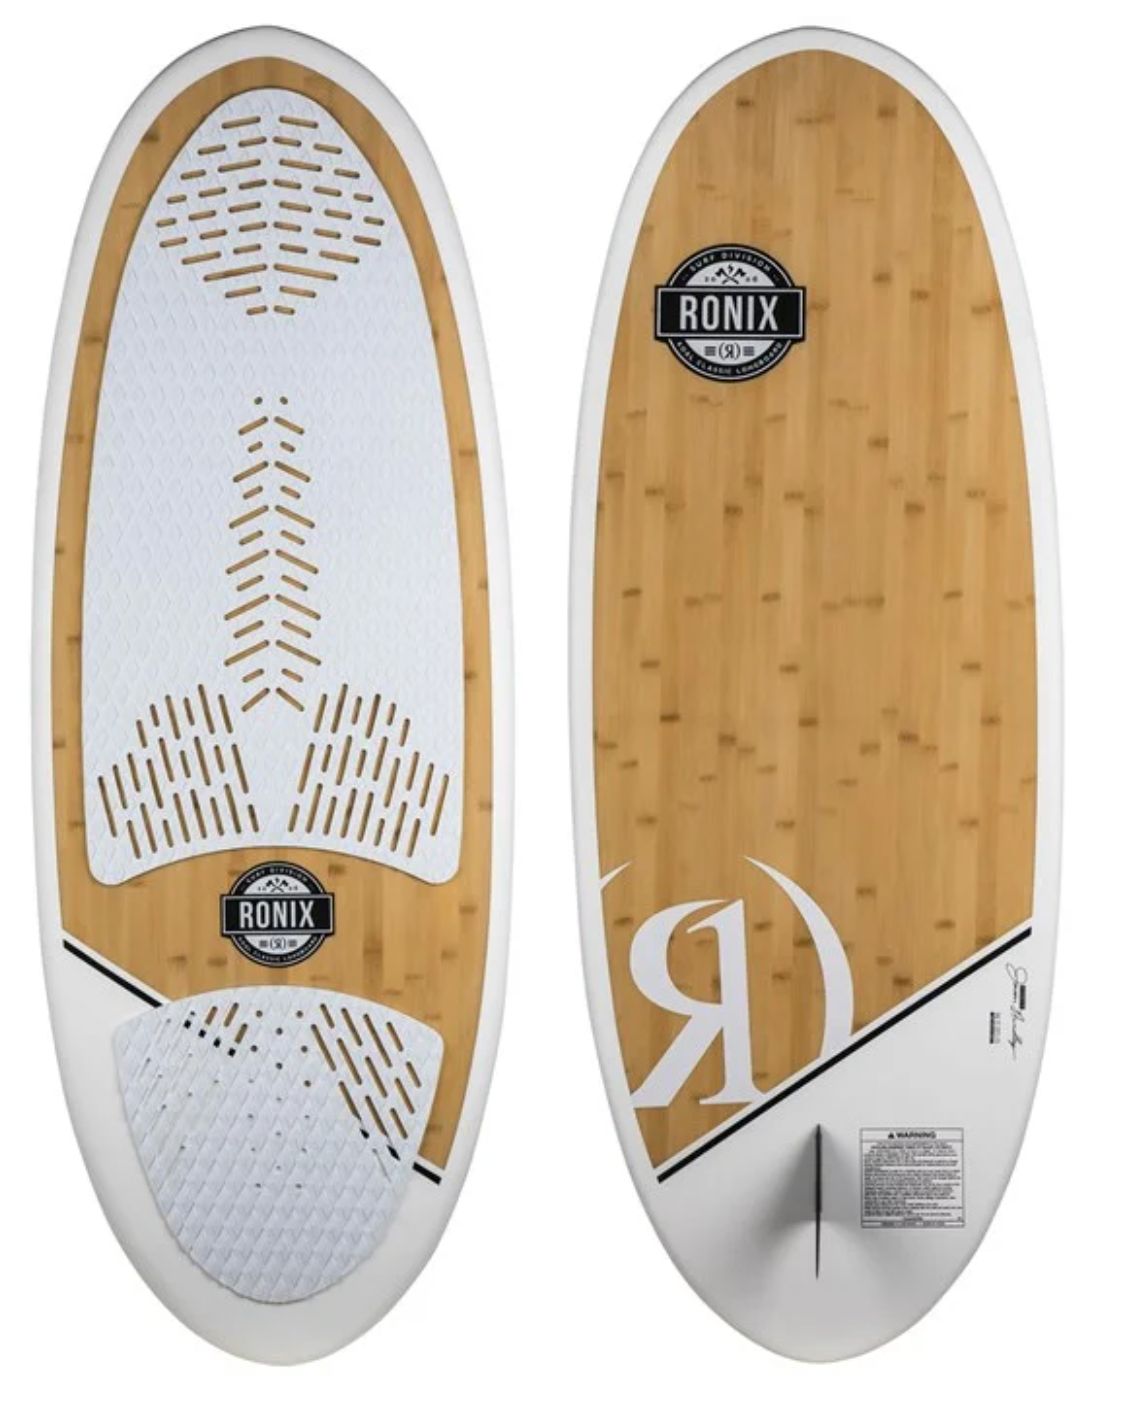 beginner wakesurf board - white and wood